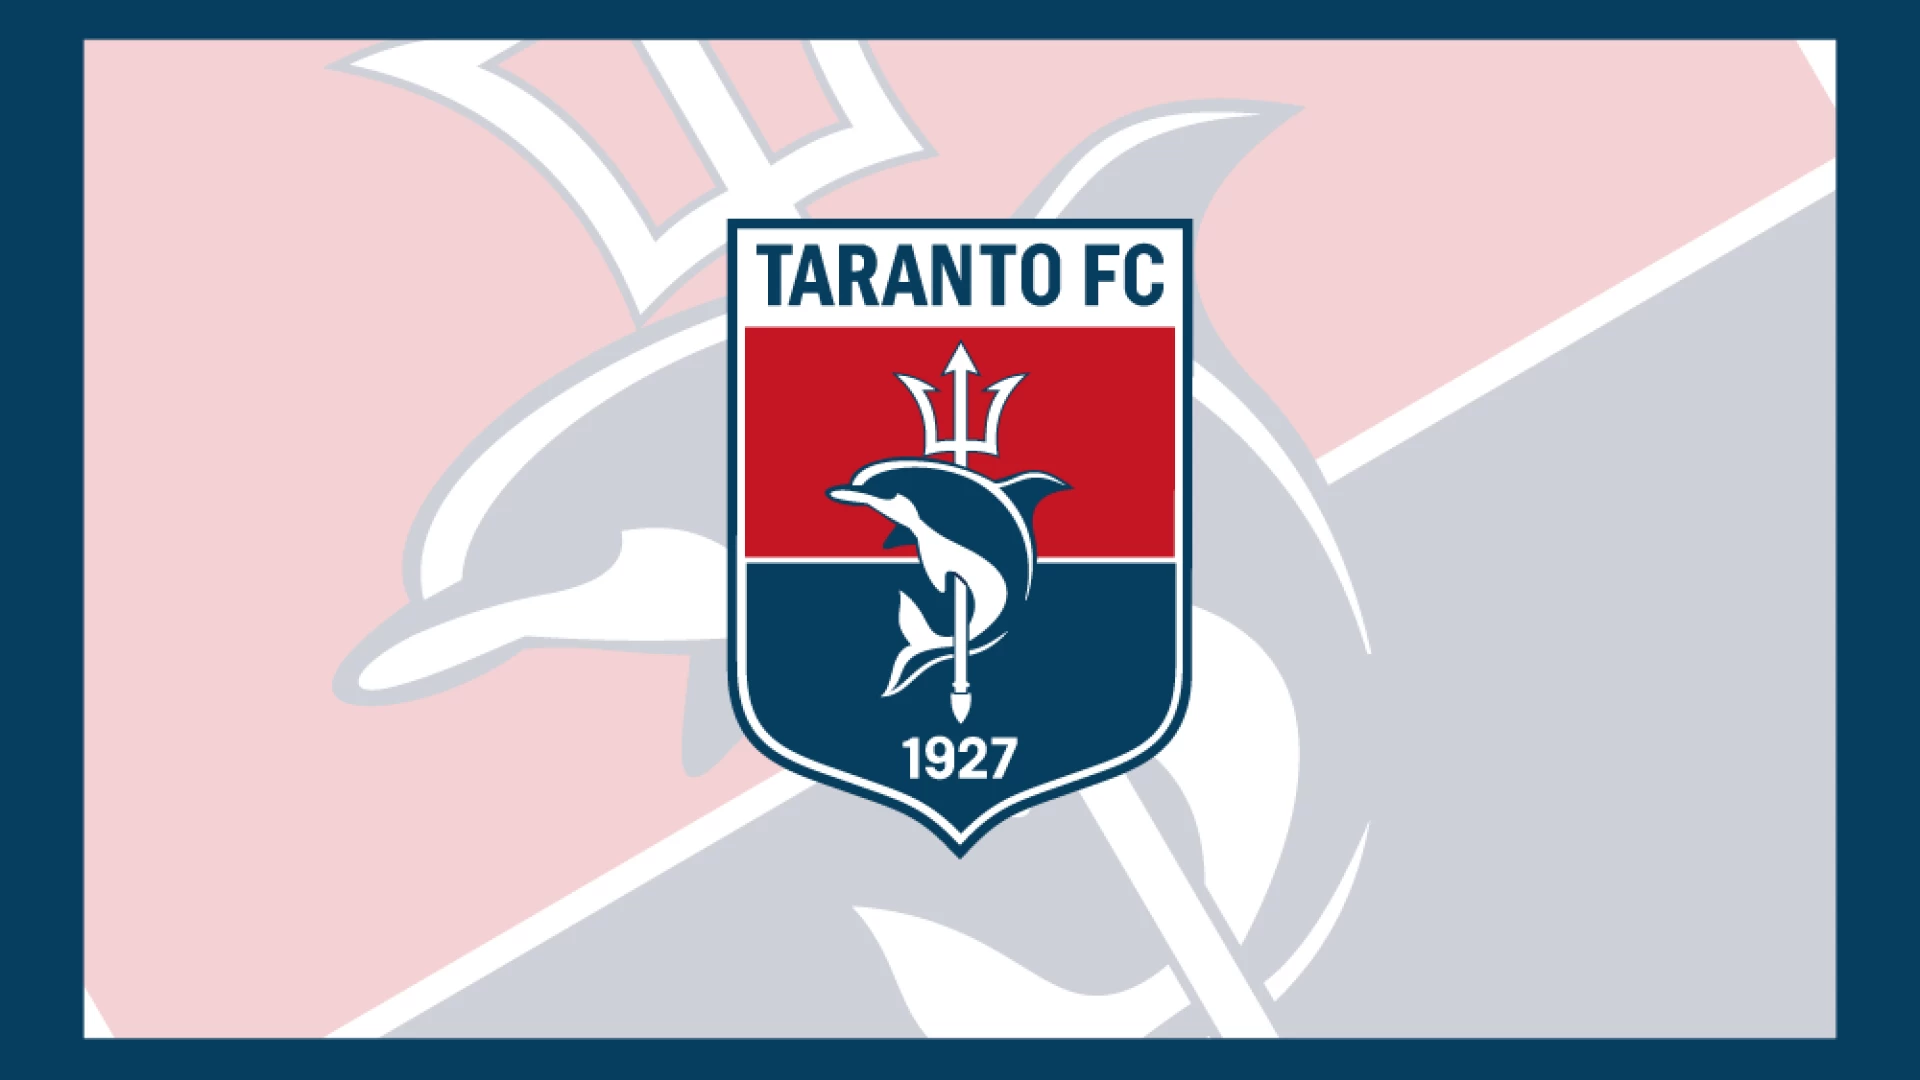 Lega Pro, il Taranto FC giocherà al Teofilo Patini di Castel di Sangro